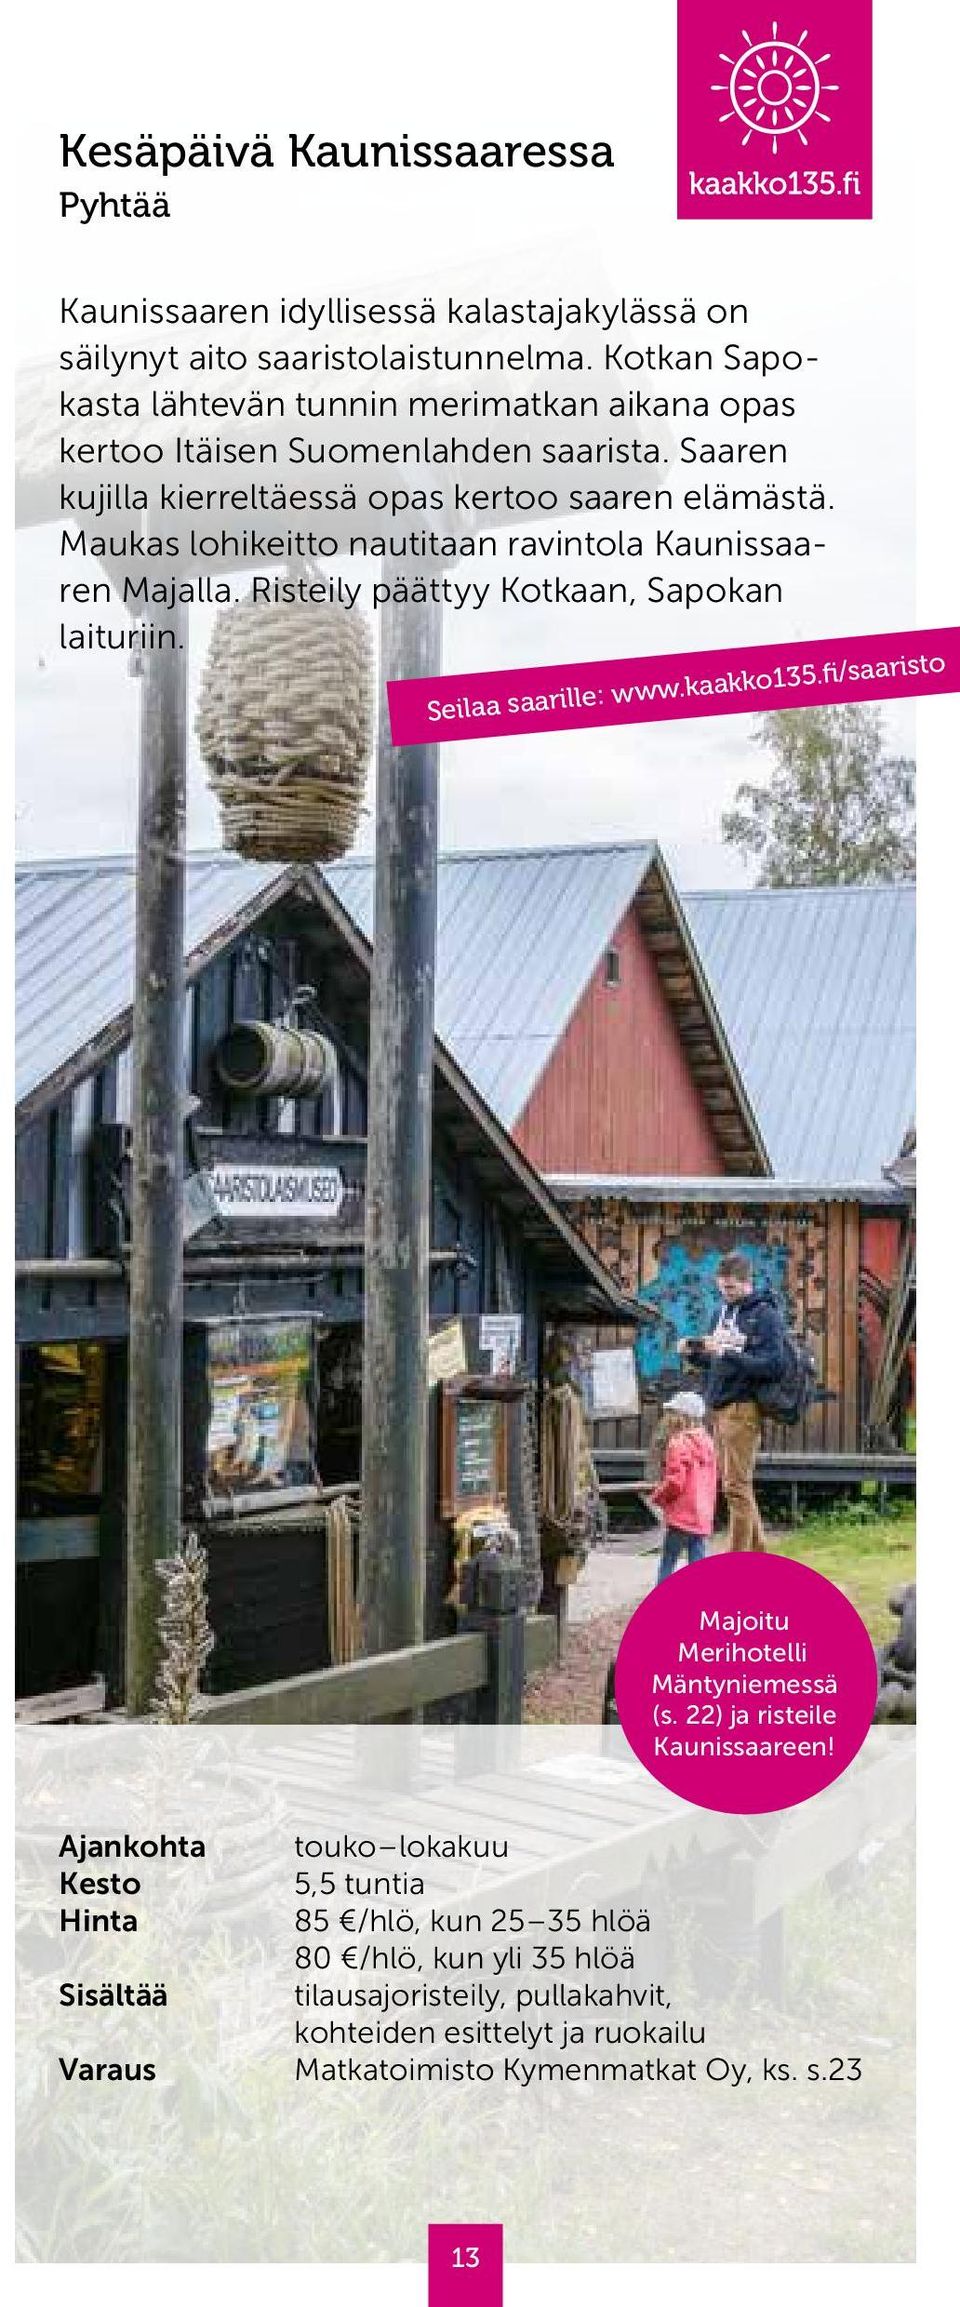 Maukas lohikeitto nautitaan ravintola Kaunissaaren Majalla. Risteily päättyy Kotkaan, Sapokan laituriin. Seilaa saarille: www.kaakko135.